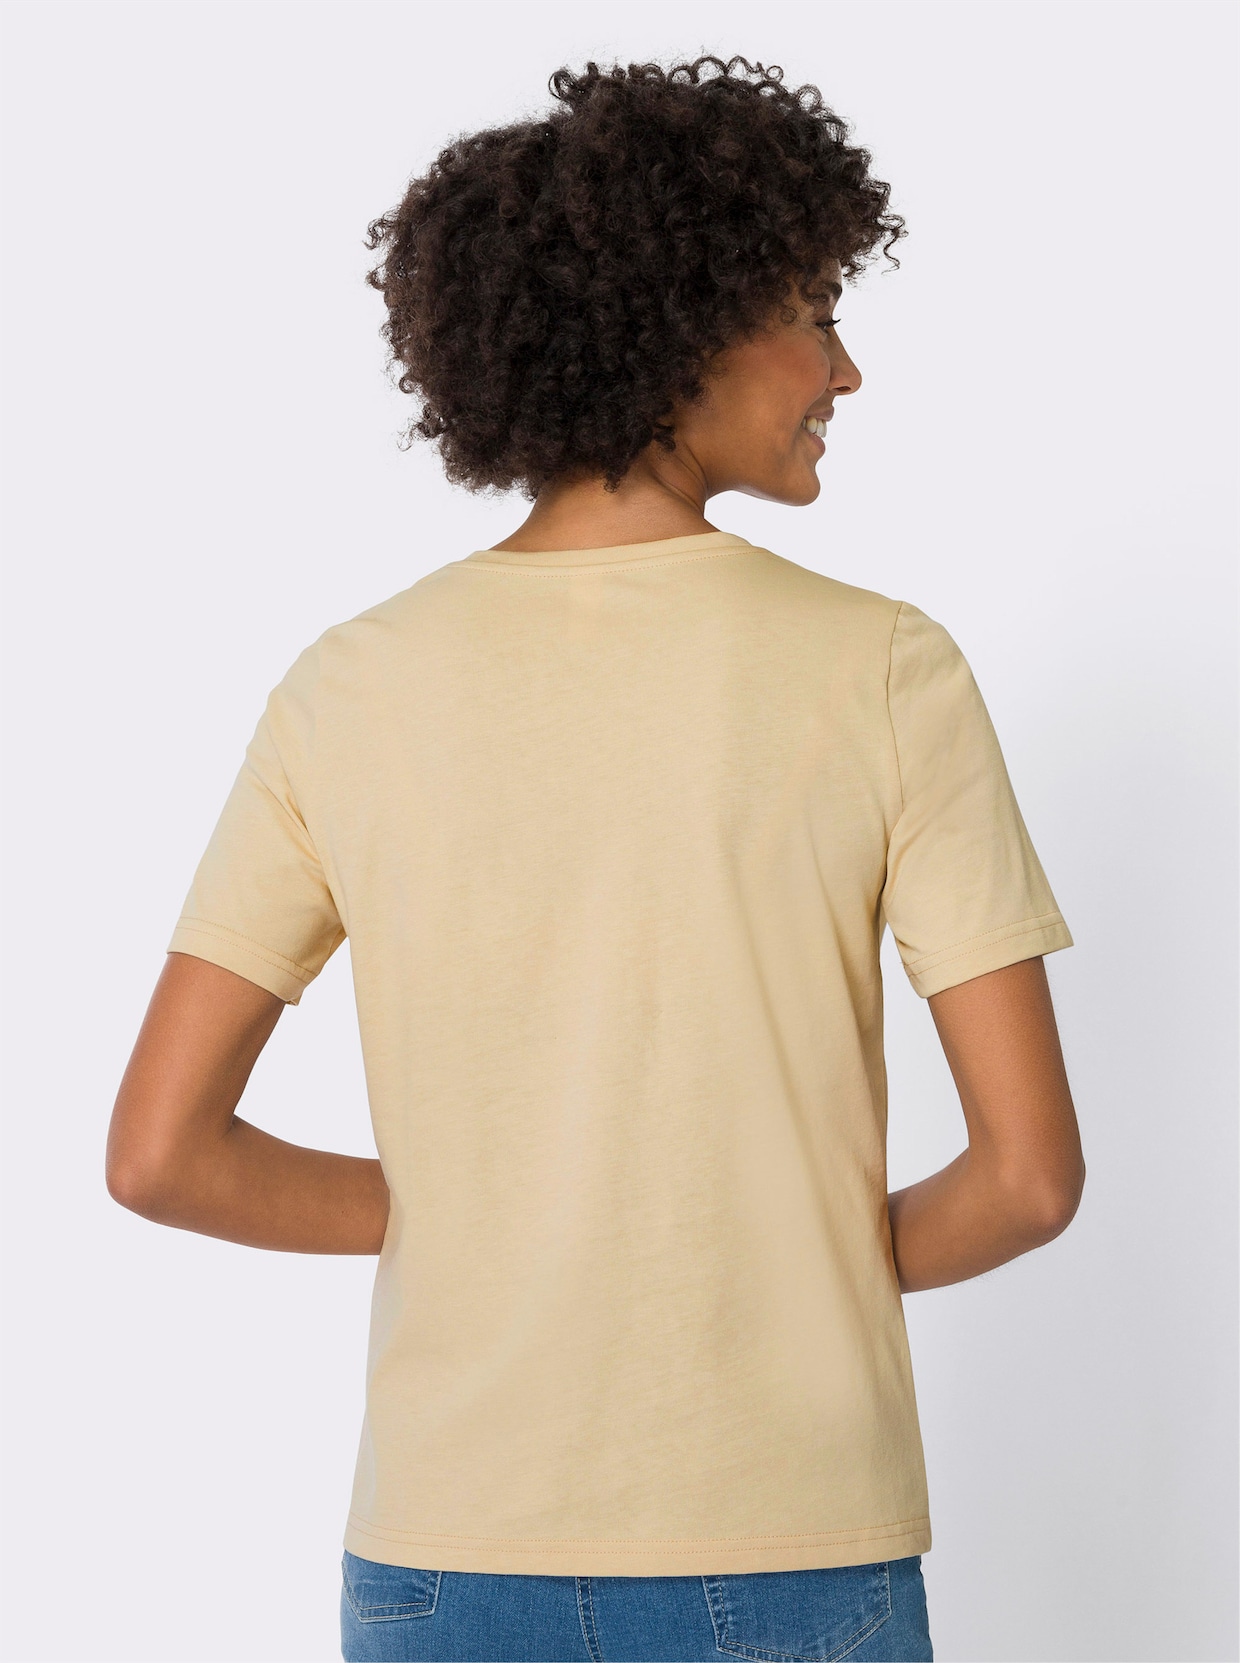 Tričko s krátkým rukávem - písková-khaki